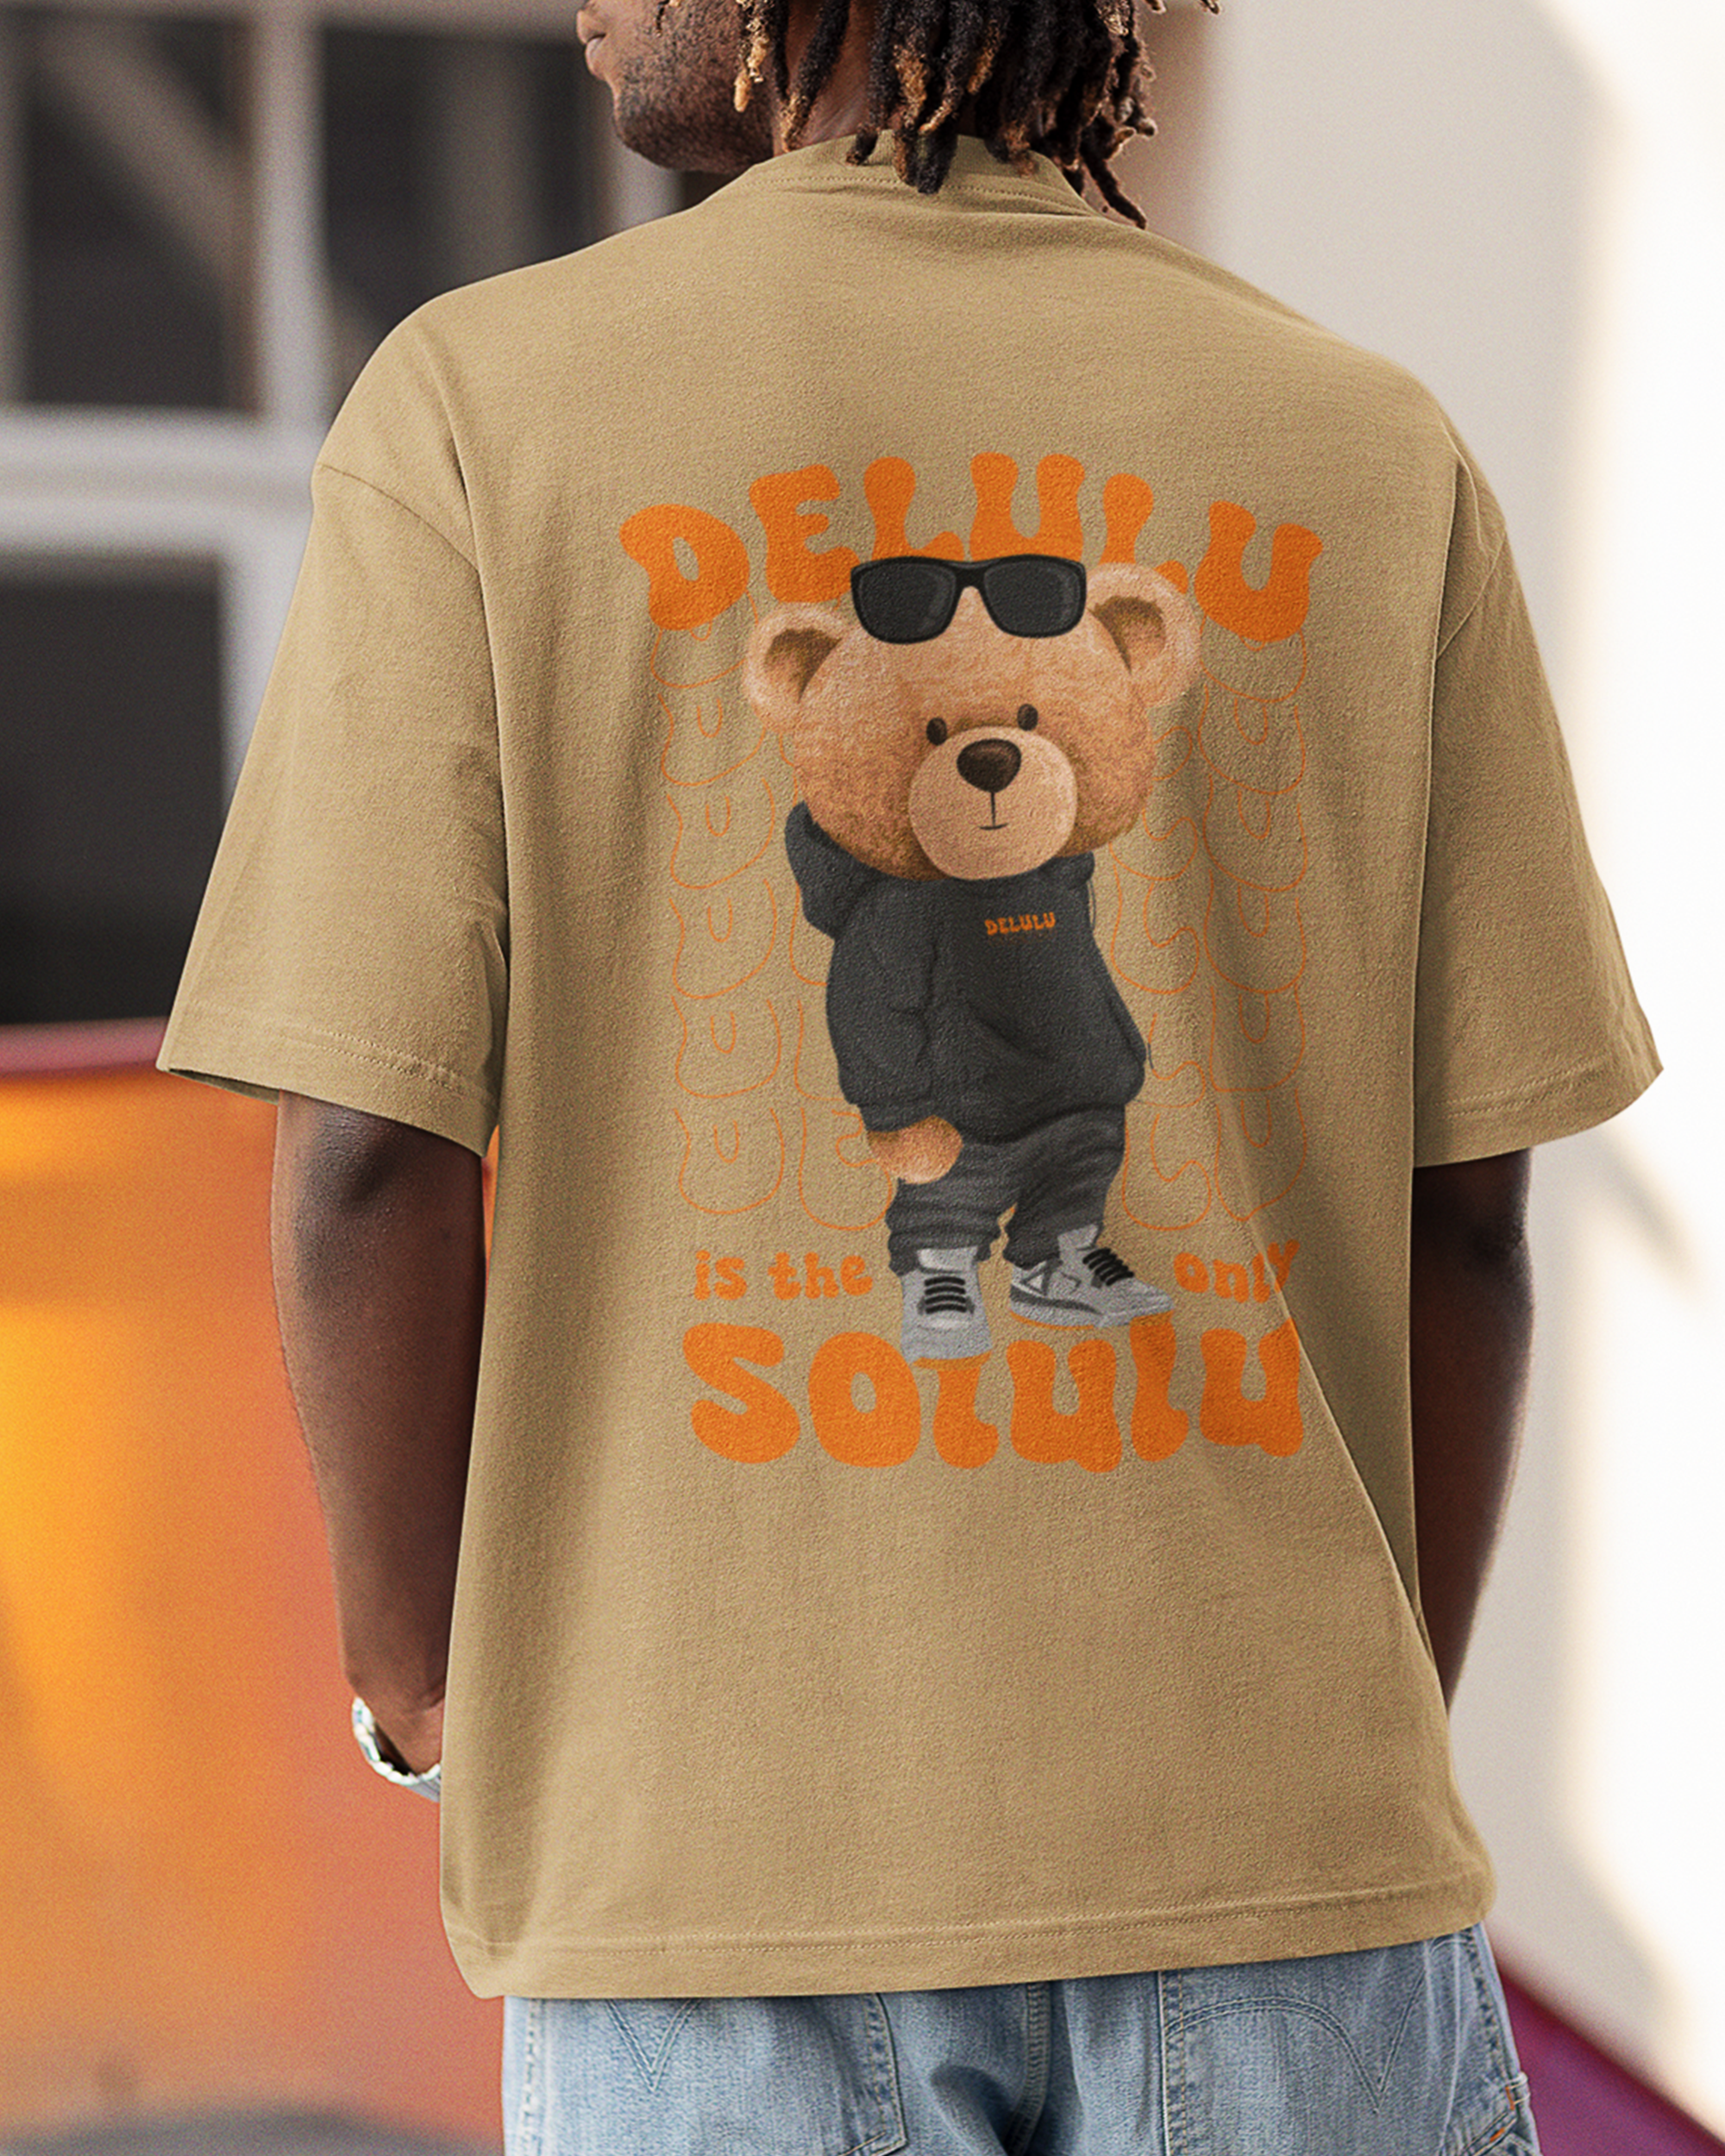 Delulu Is The Only Solulu Oversized Tshirt